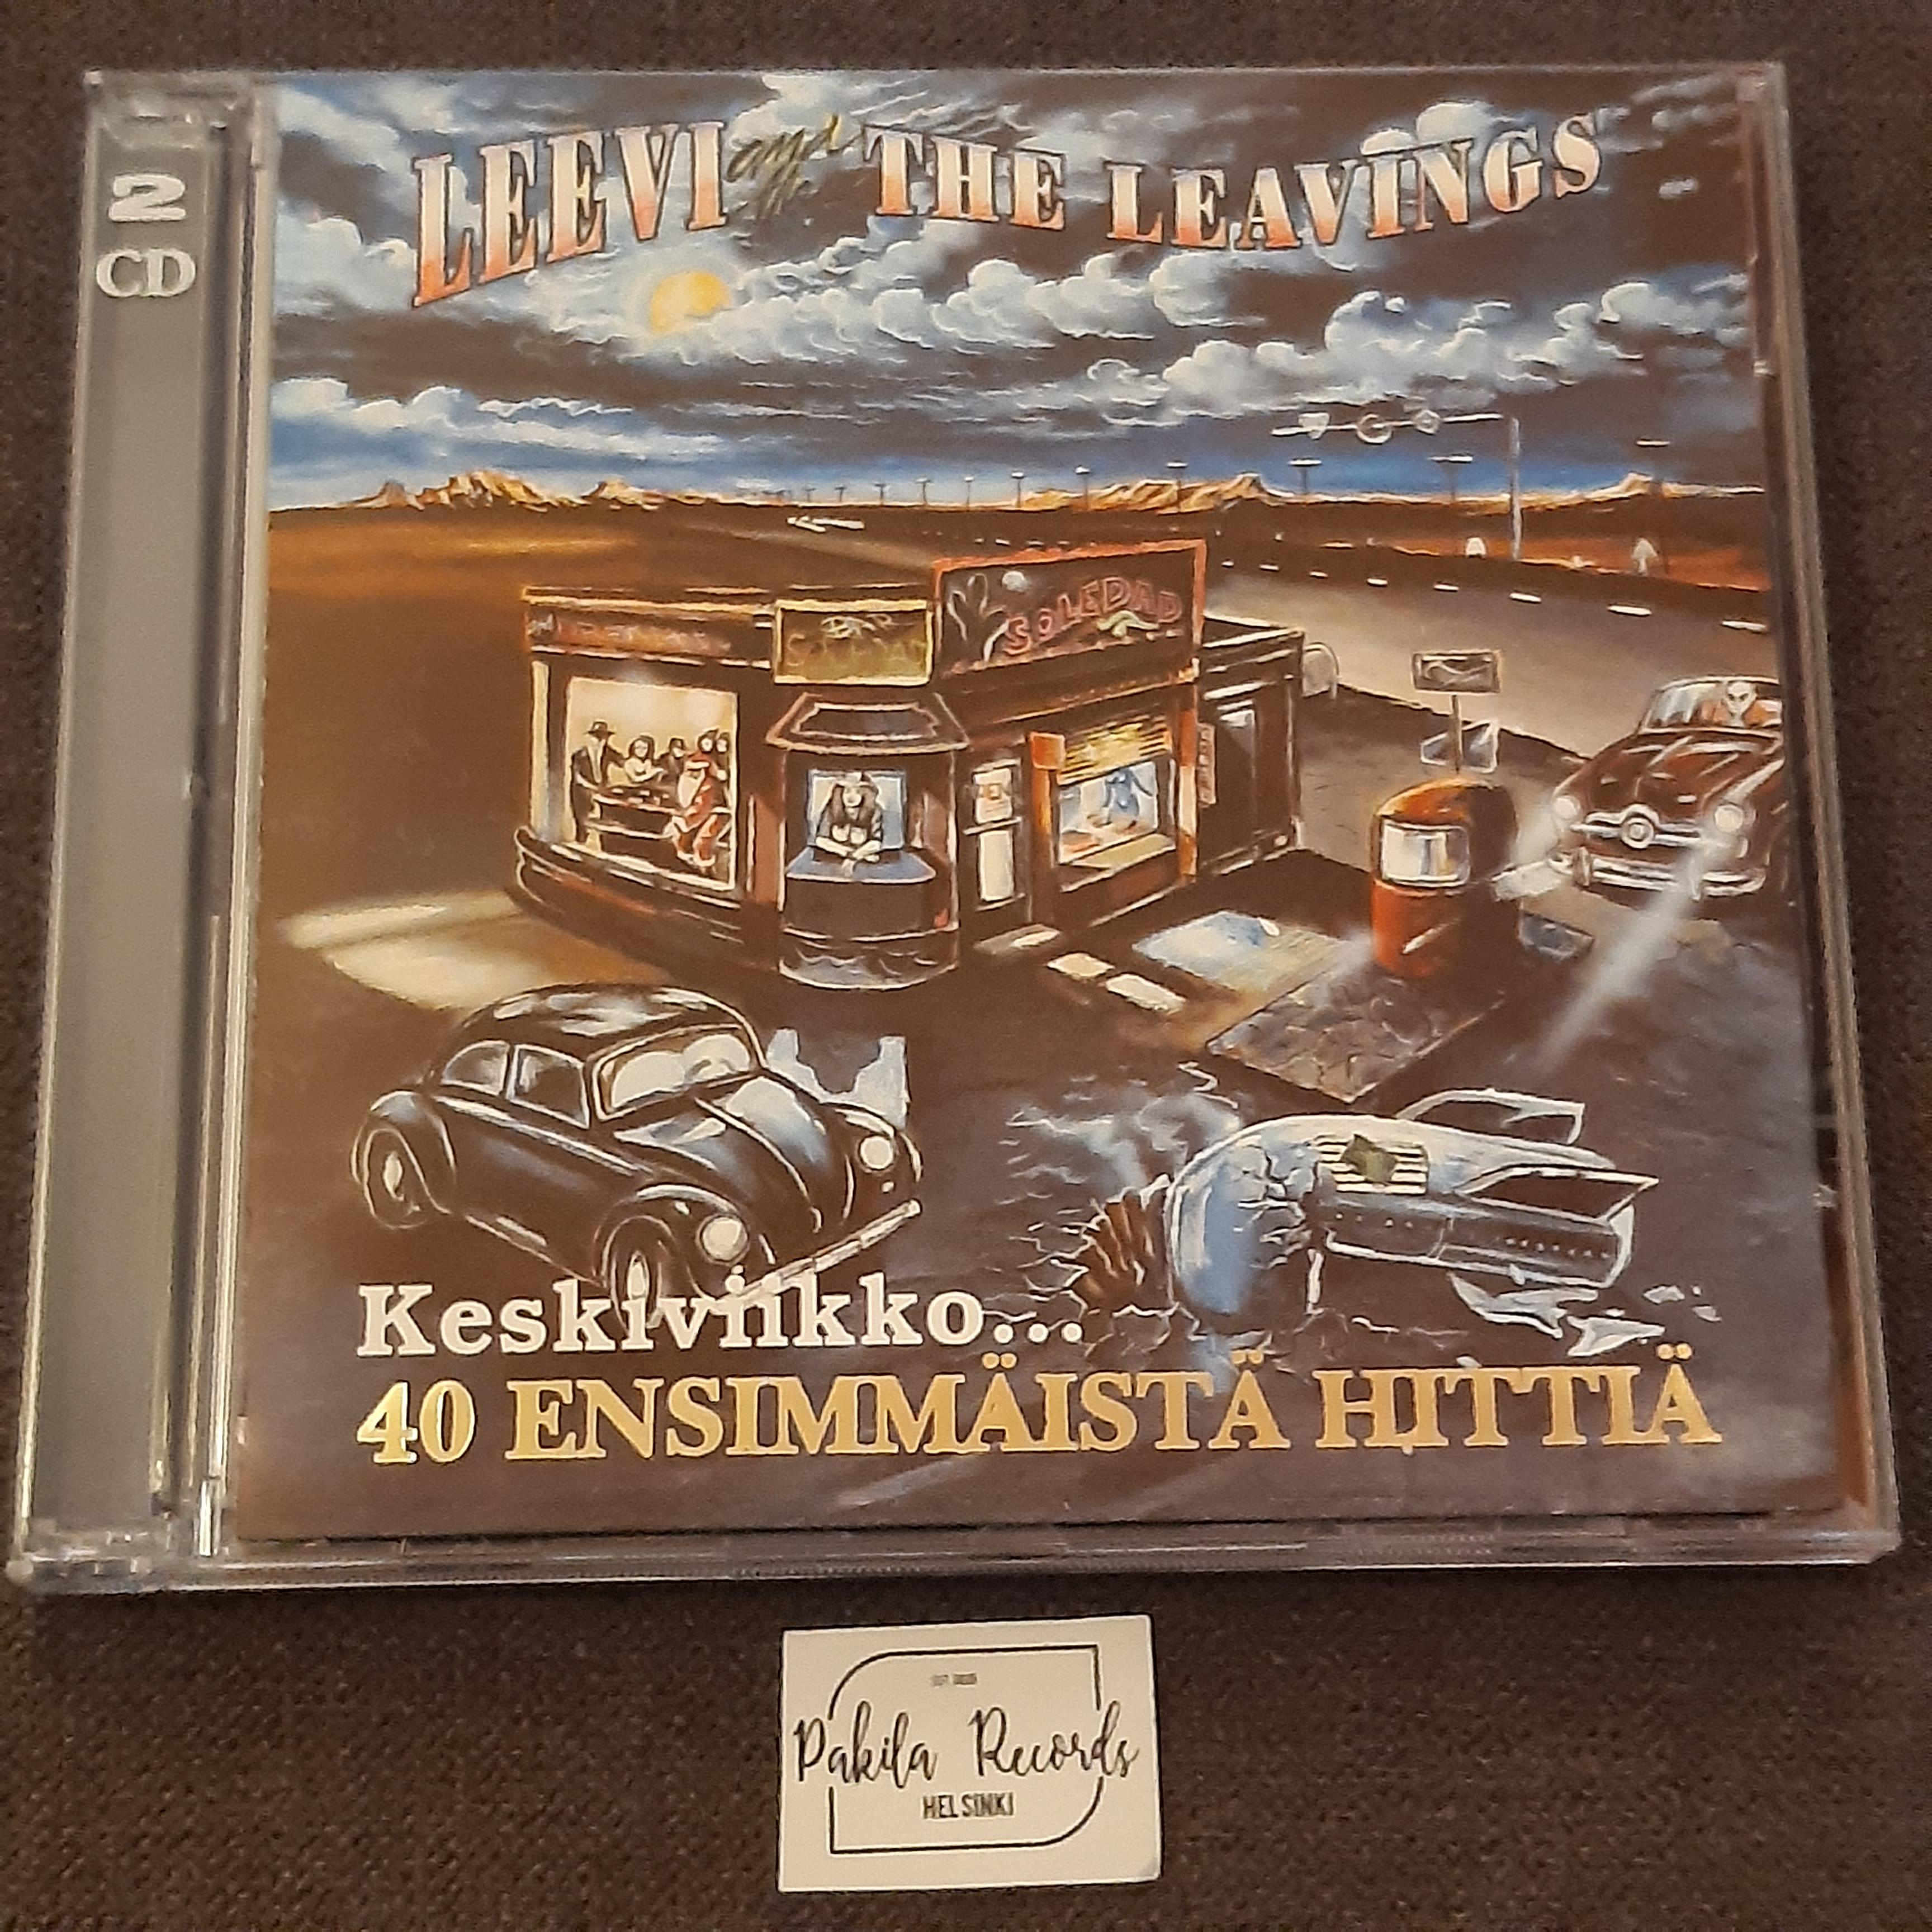 Leevi And The Leavings - Keskiviikko... 40 ensimmäistä hittiä - 2 CD (käytetty)